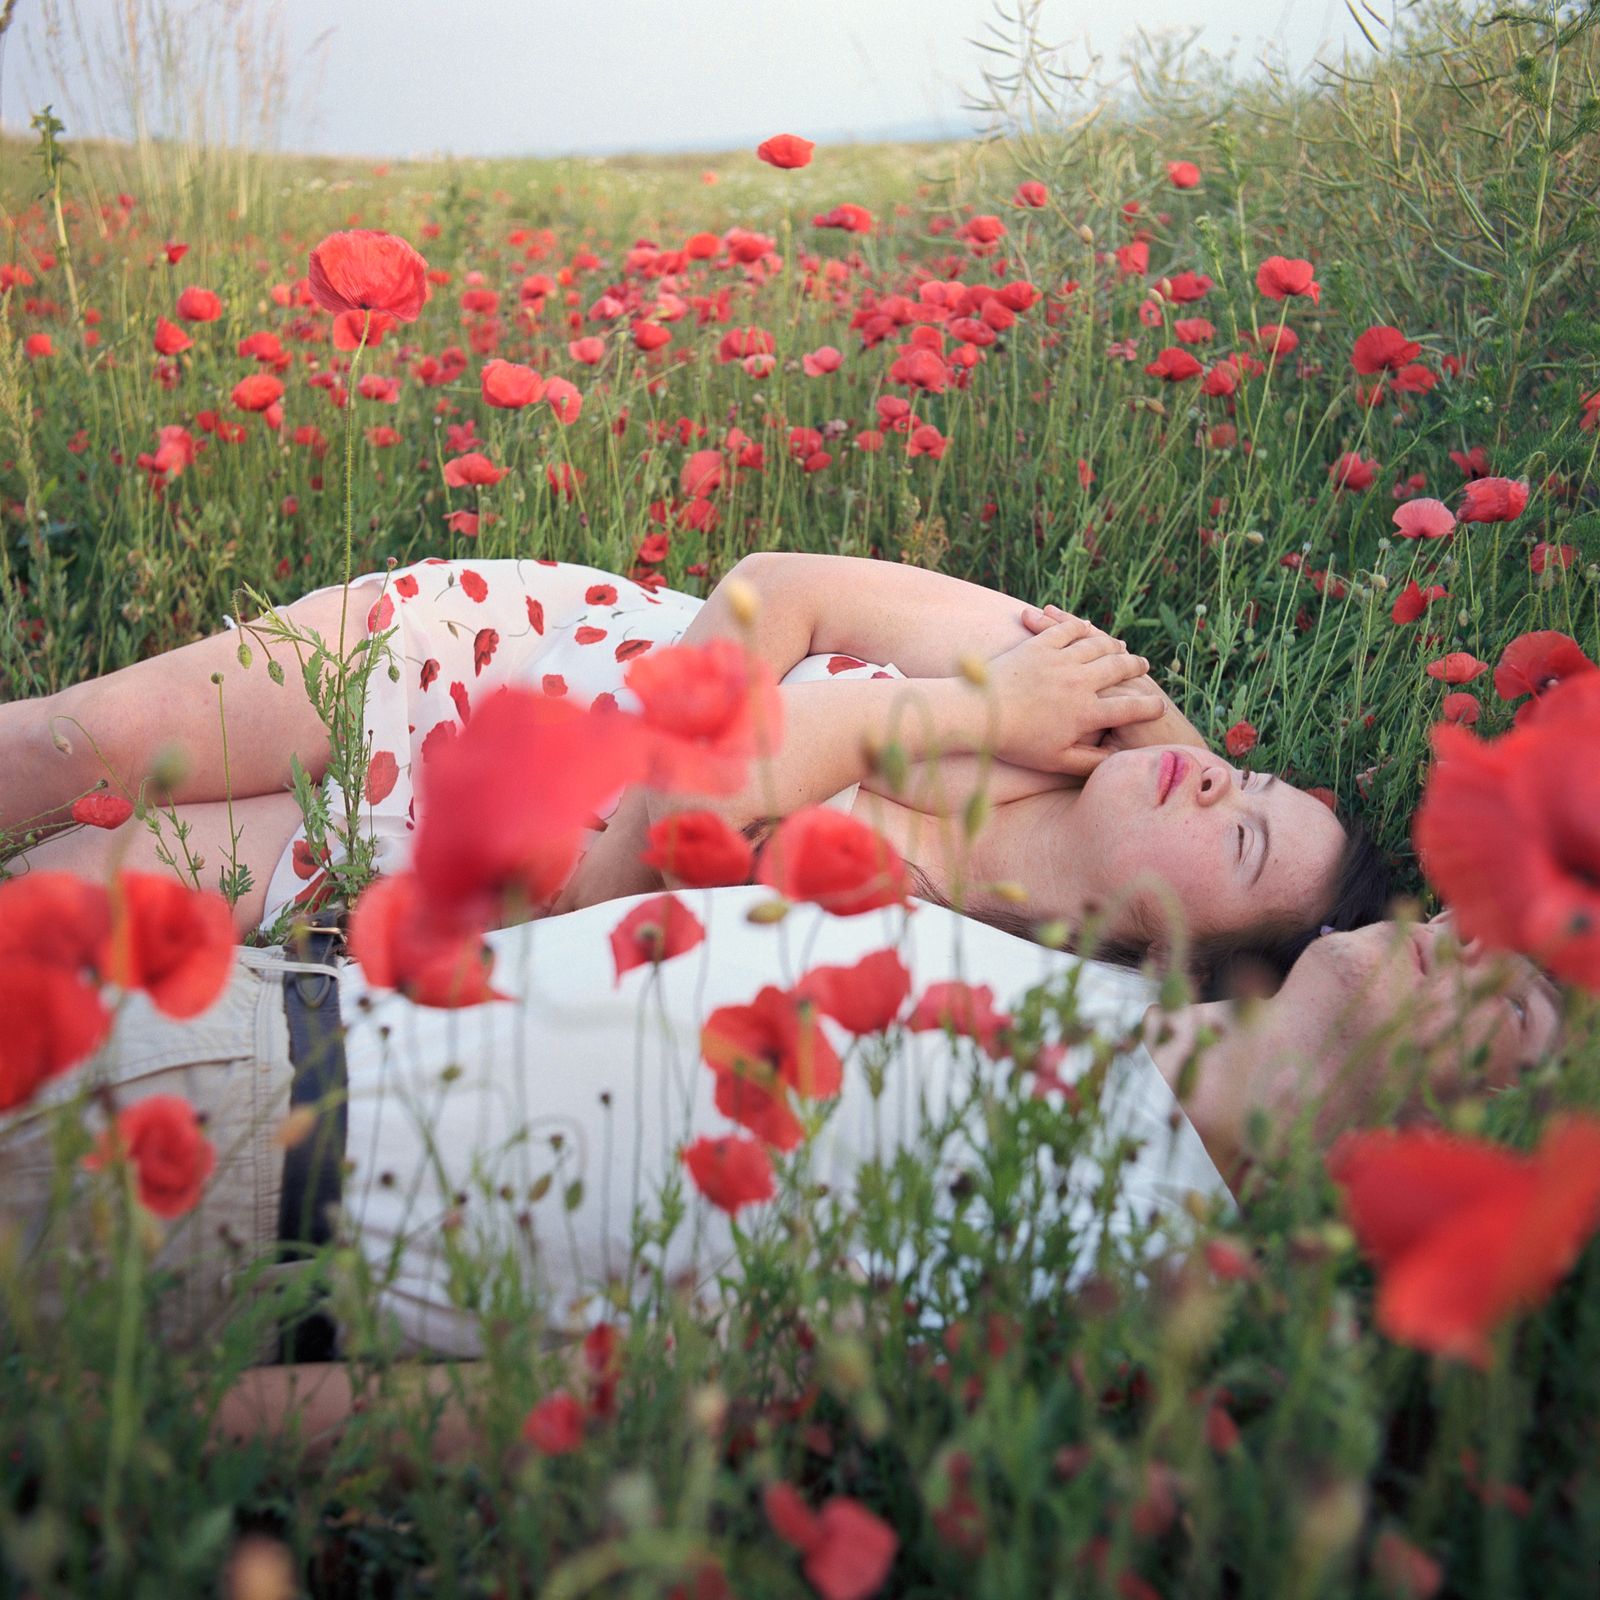 © Snezhana von Büdingen-Dyba - Sofie with her boyfriend Andy in the poppy field